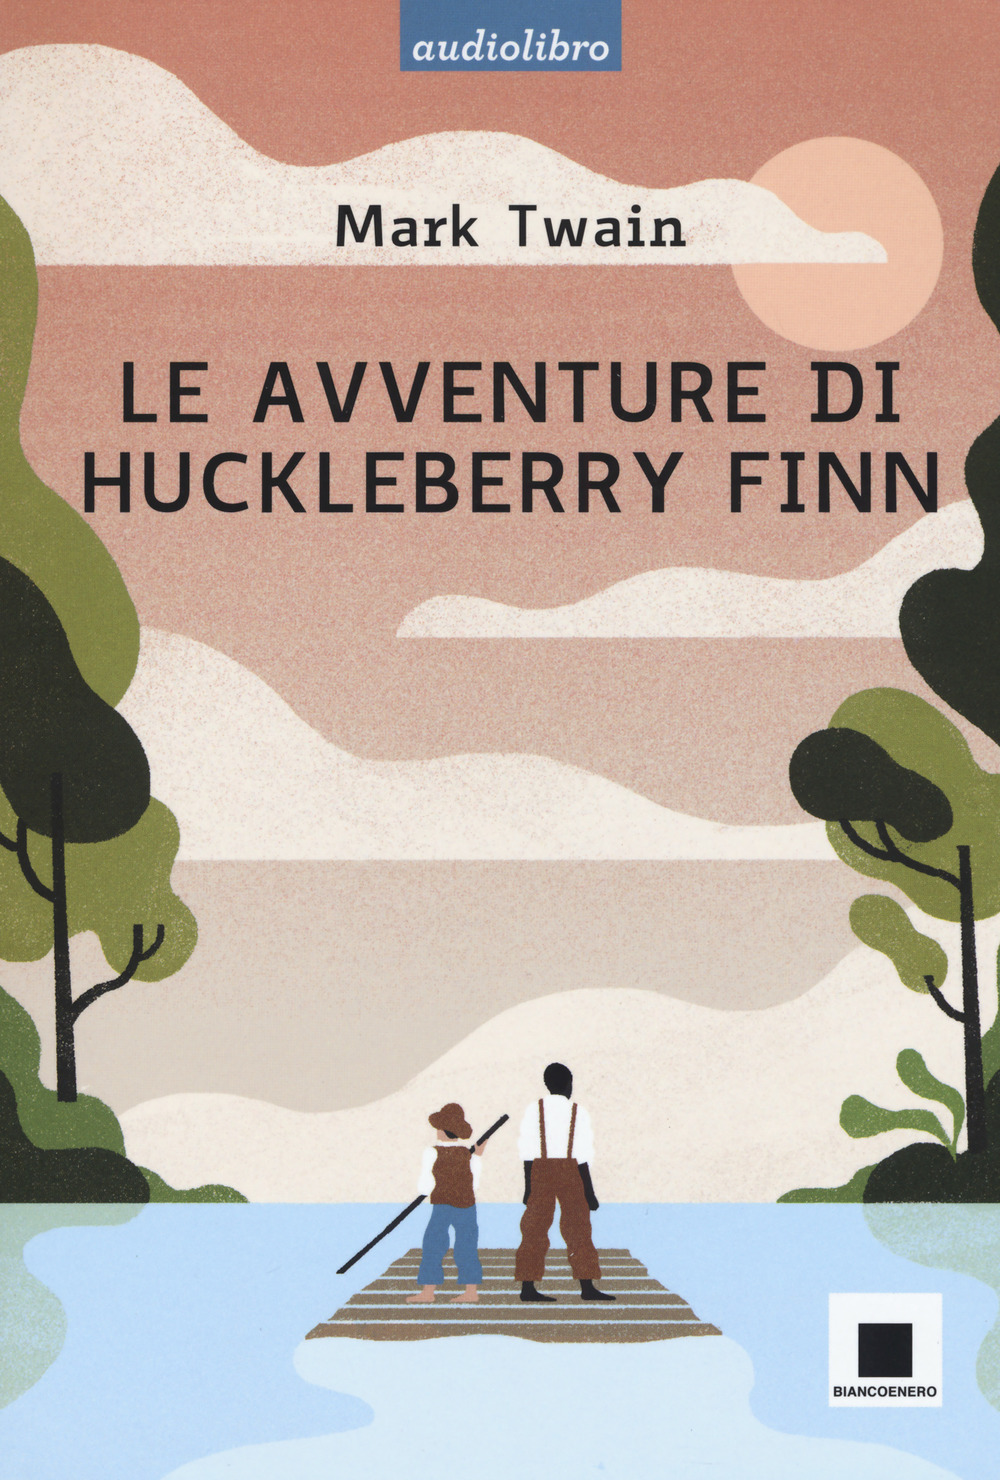 Le avventure di Huckleberry Finn letto da Pierfrancesco Poggi. Ediz. a caratteri grandi. Con CD-Audio